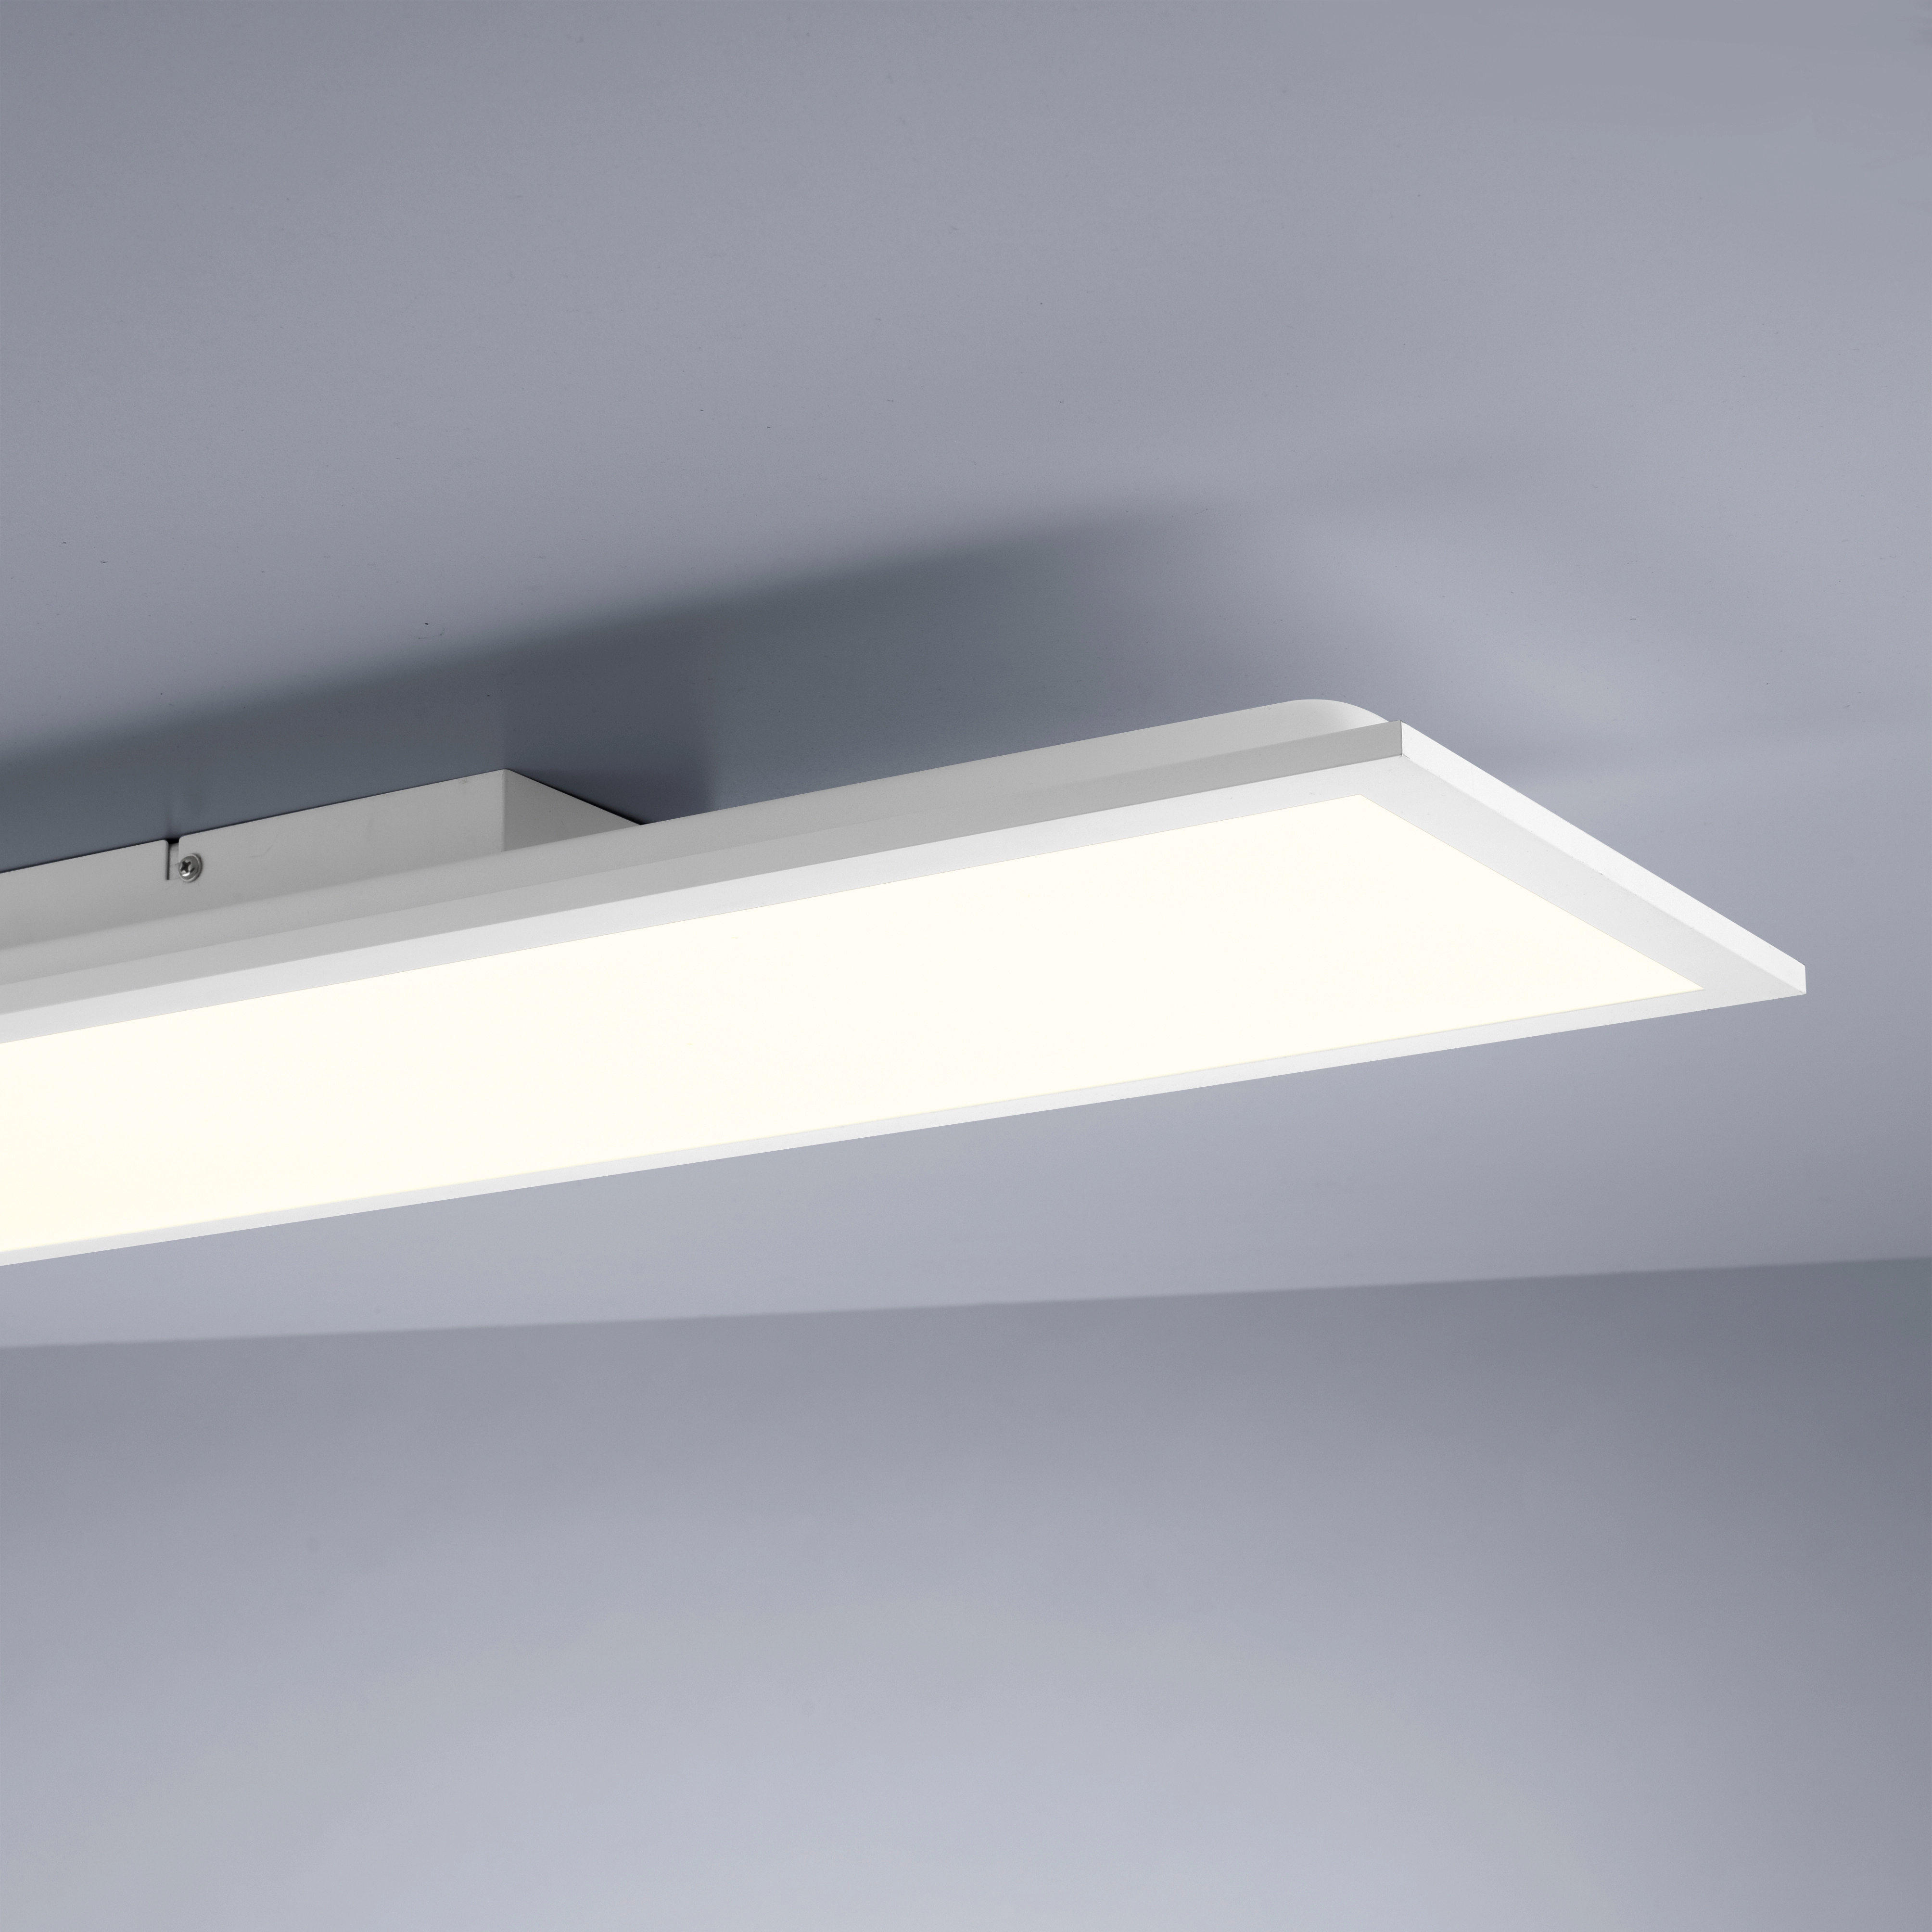 Just Light. LED-Deckenleuchte Flat Weiß OBI kaufen bei